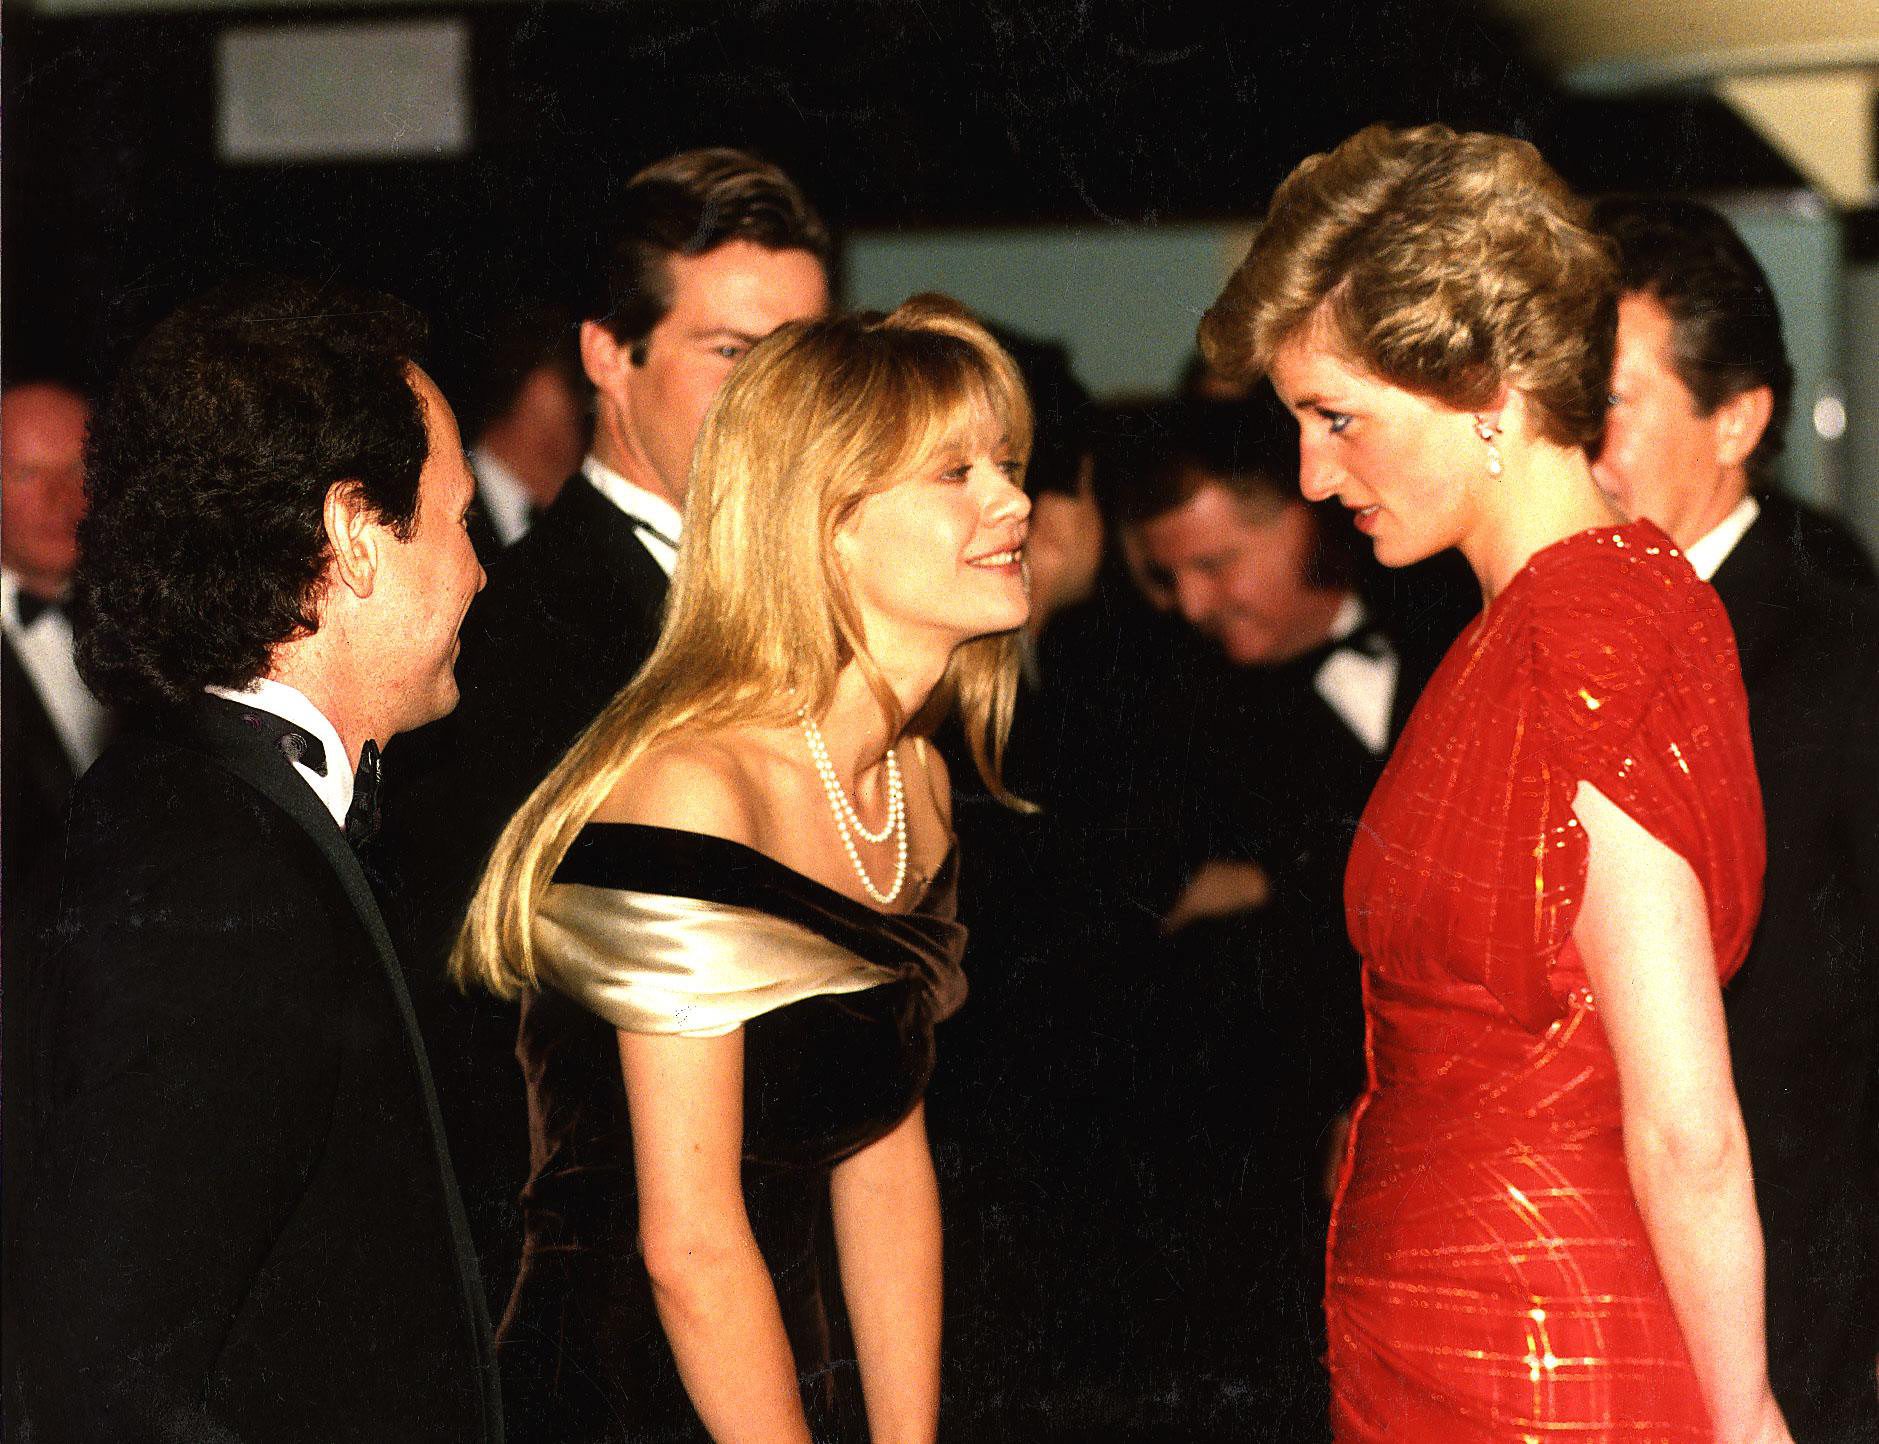 Diana hercegnő és Meg Ryan 1989-ben